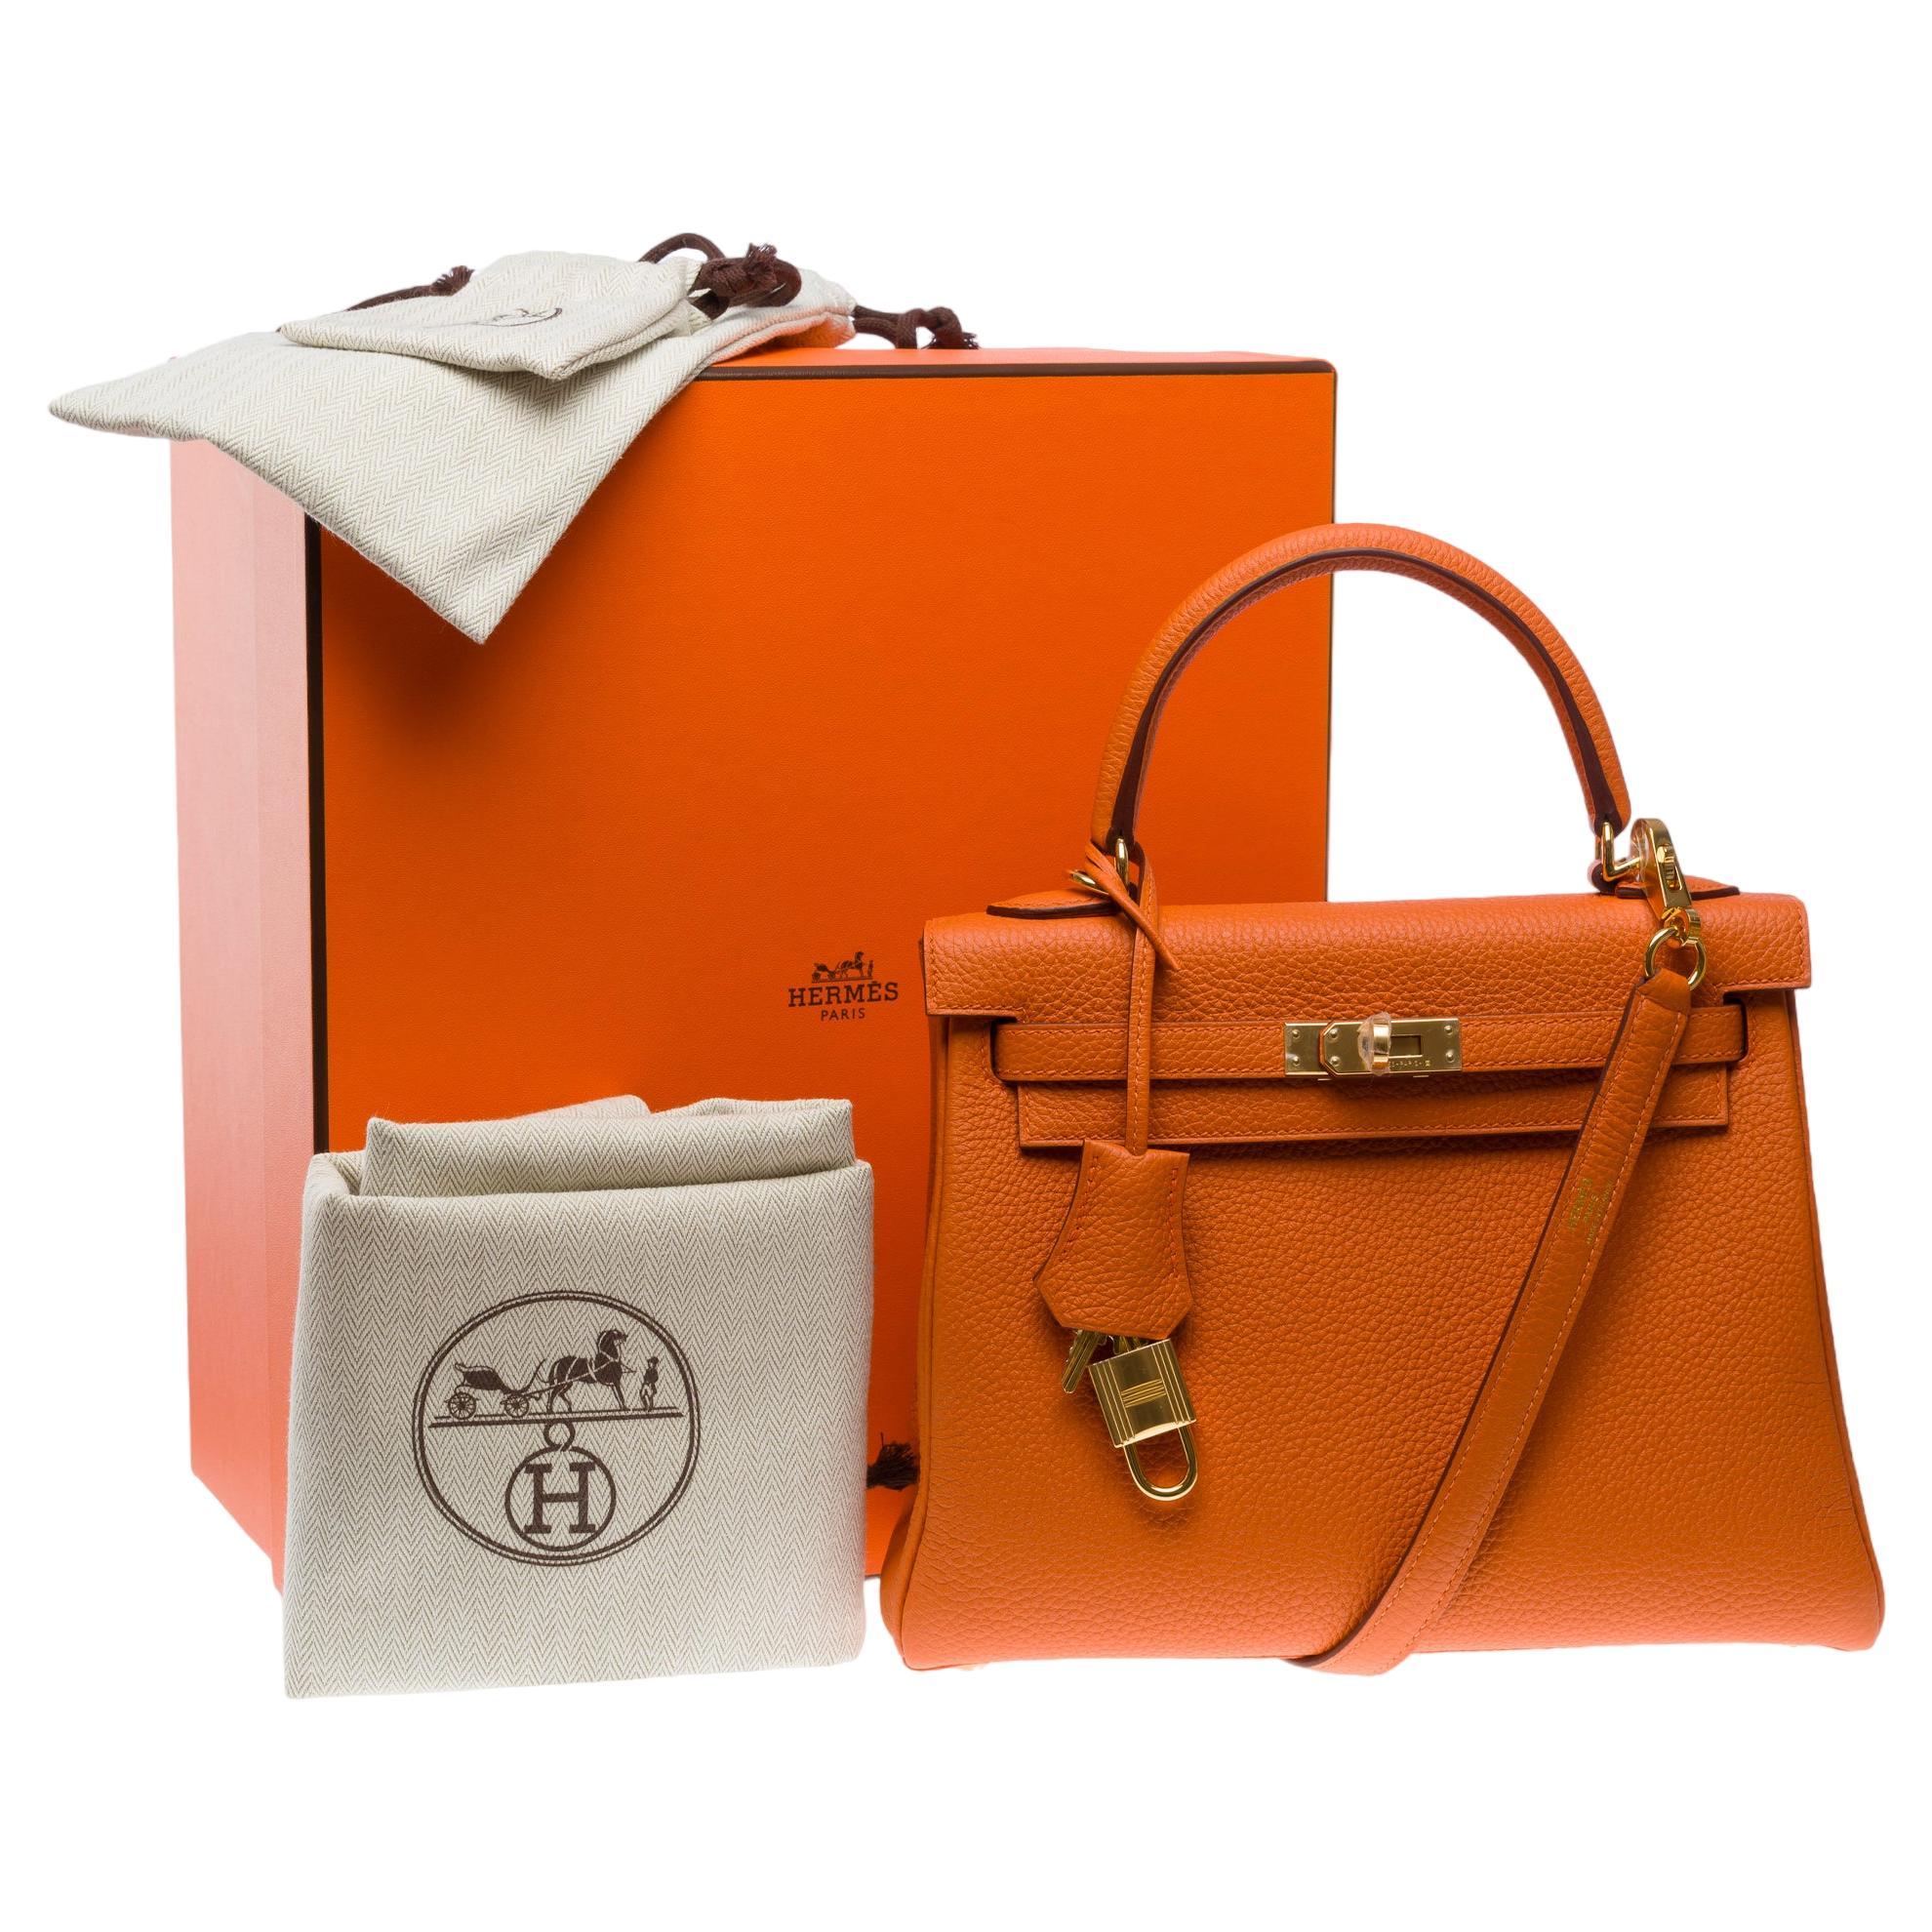 Amazing New Hermès Kelly 25 retourne Handtasche Riemen in Orange Togo Leder , GHW